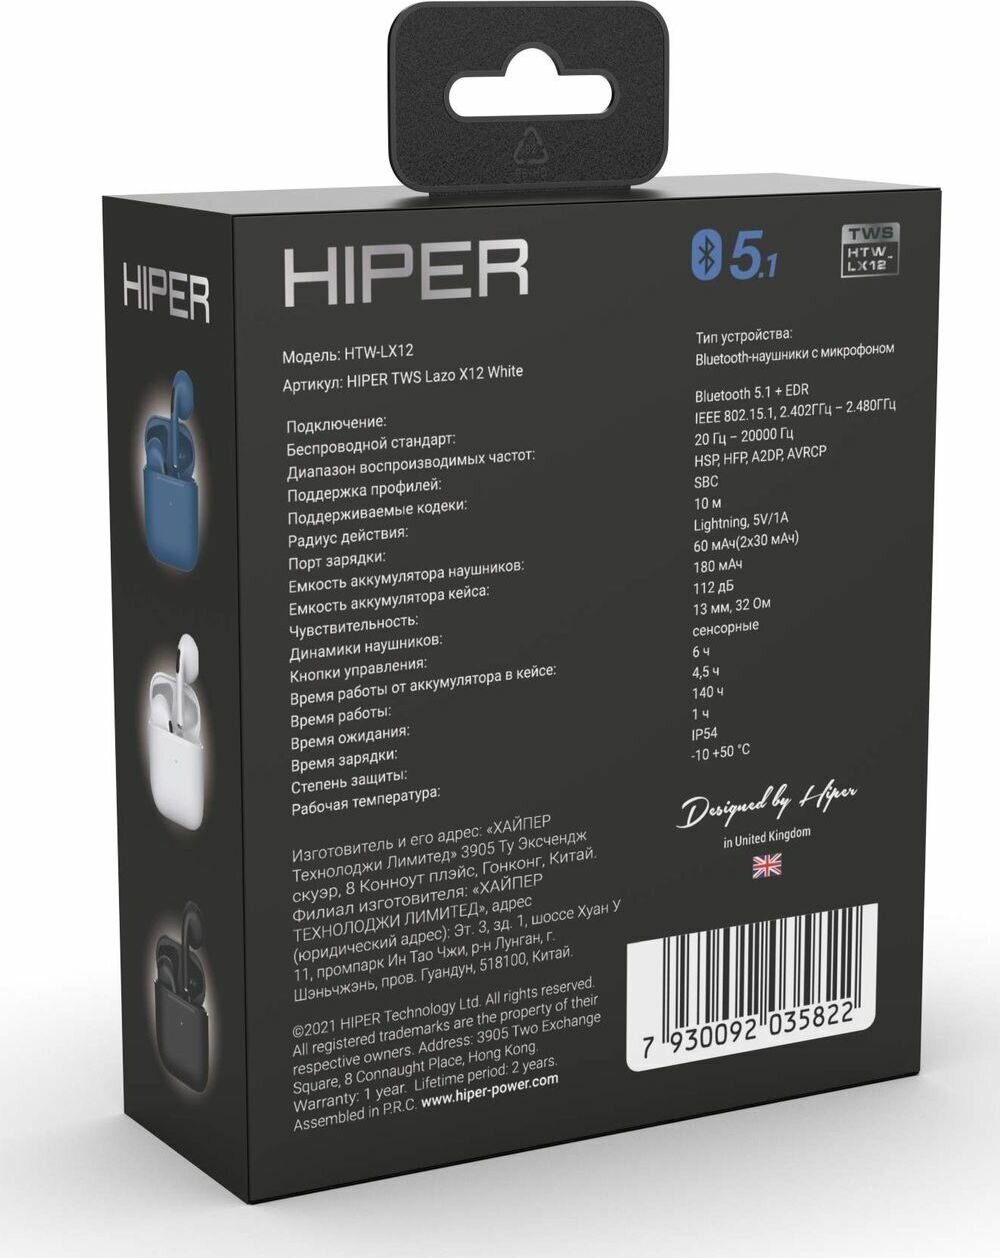 Гарнитура HIPER TWS Lazo LX12, Bluetooth, вкладыши, белый [htw-lx12] - фото №15